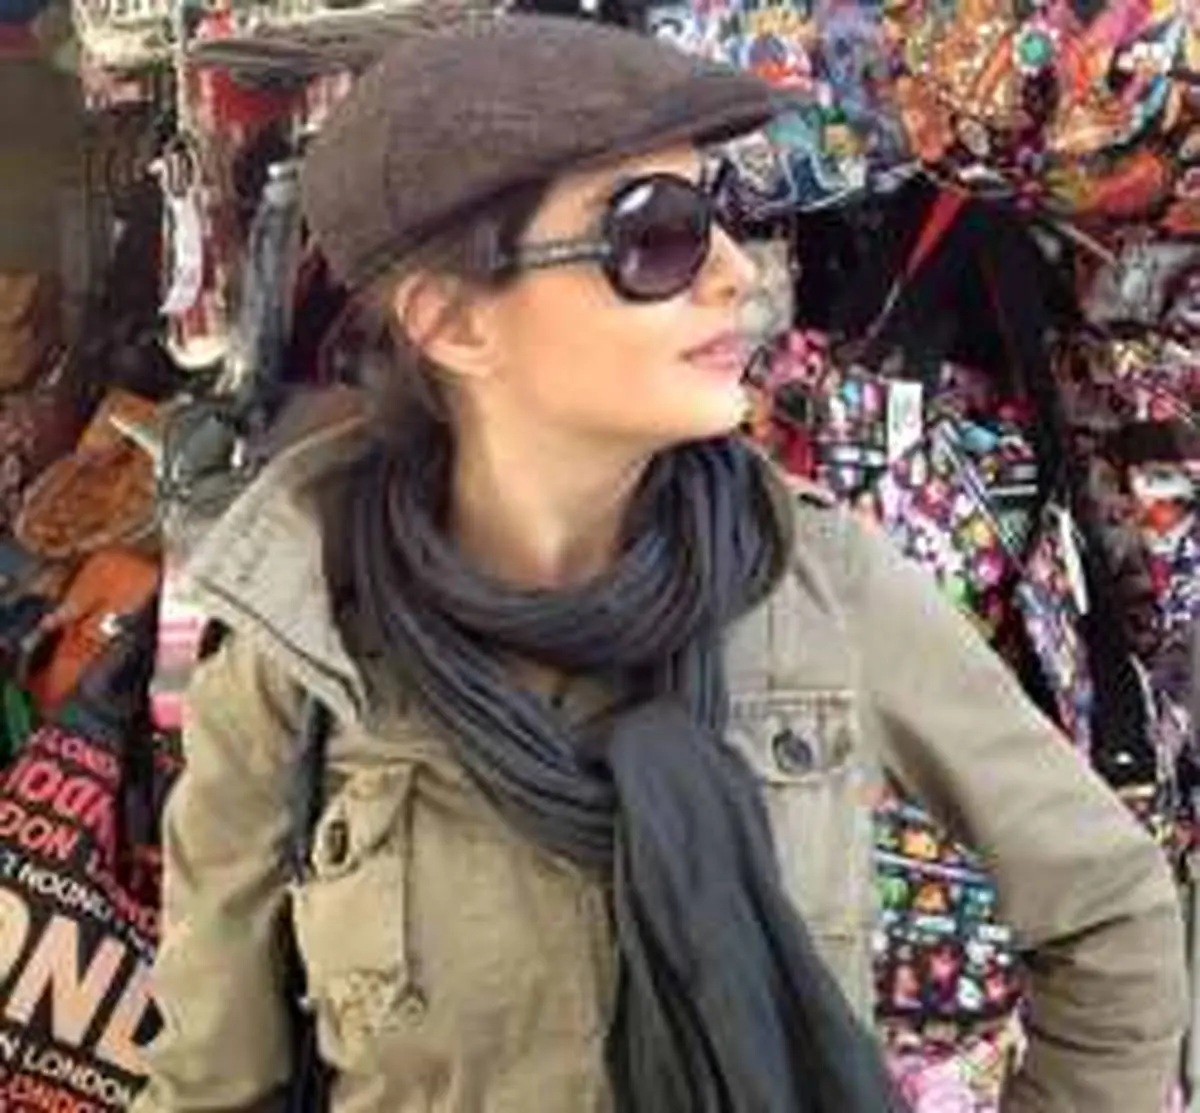 بازیگر معروف سریال دردسرهای عظیم در خارج از کشور کشف حجاب کرد + عکس